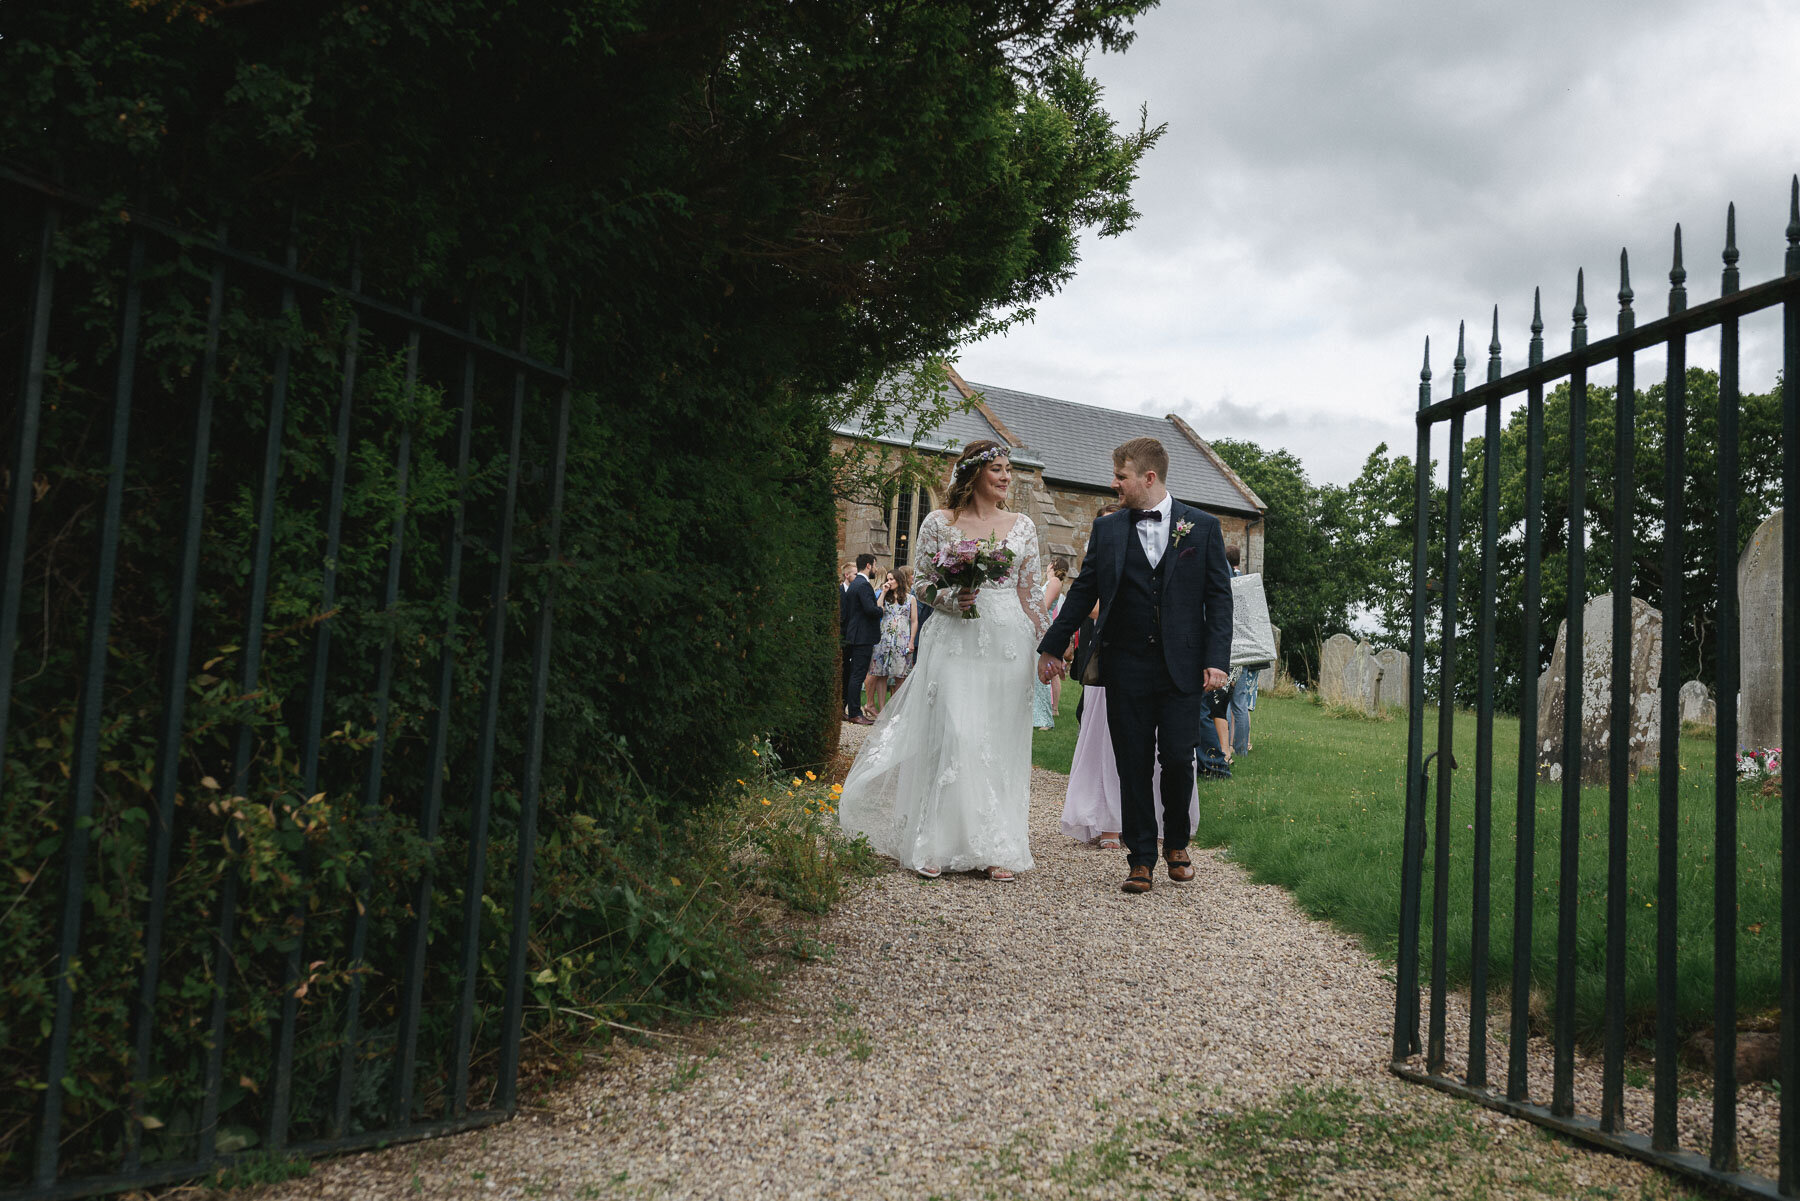 Worcestershire Wedding Photographer | Elegant Documentary Style ...